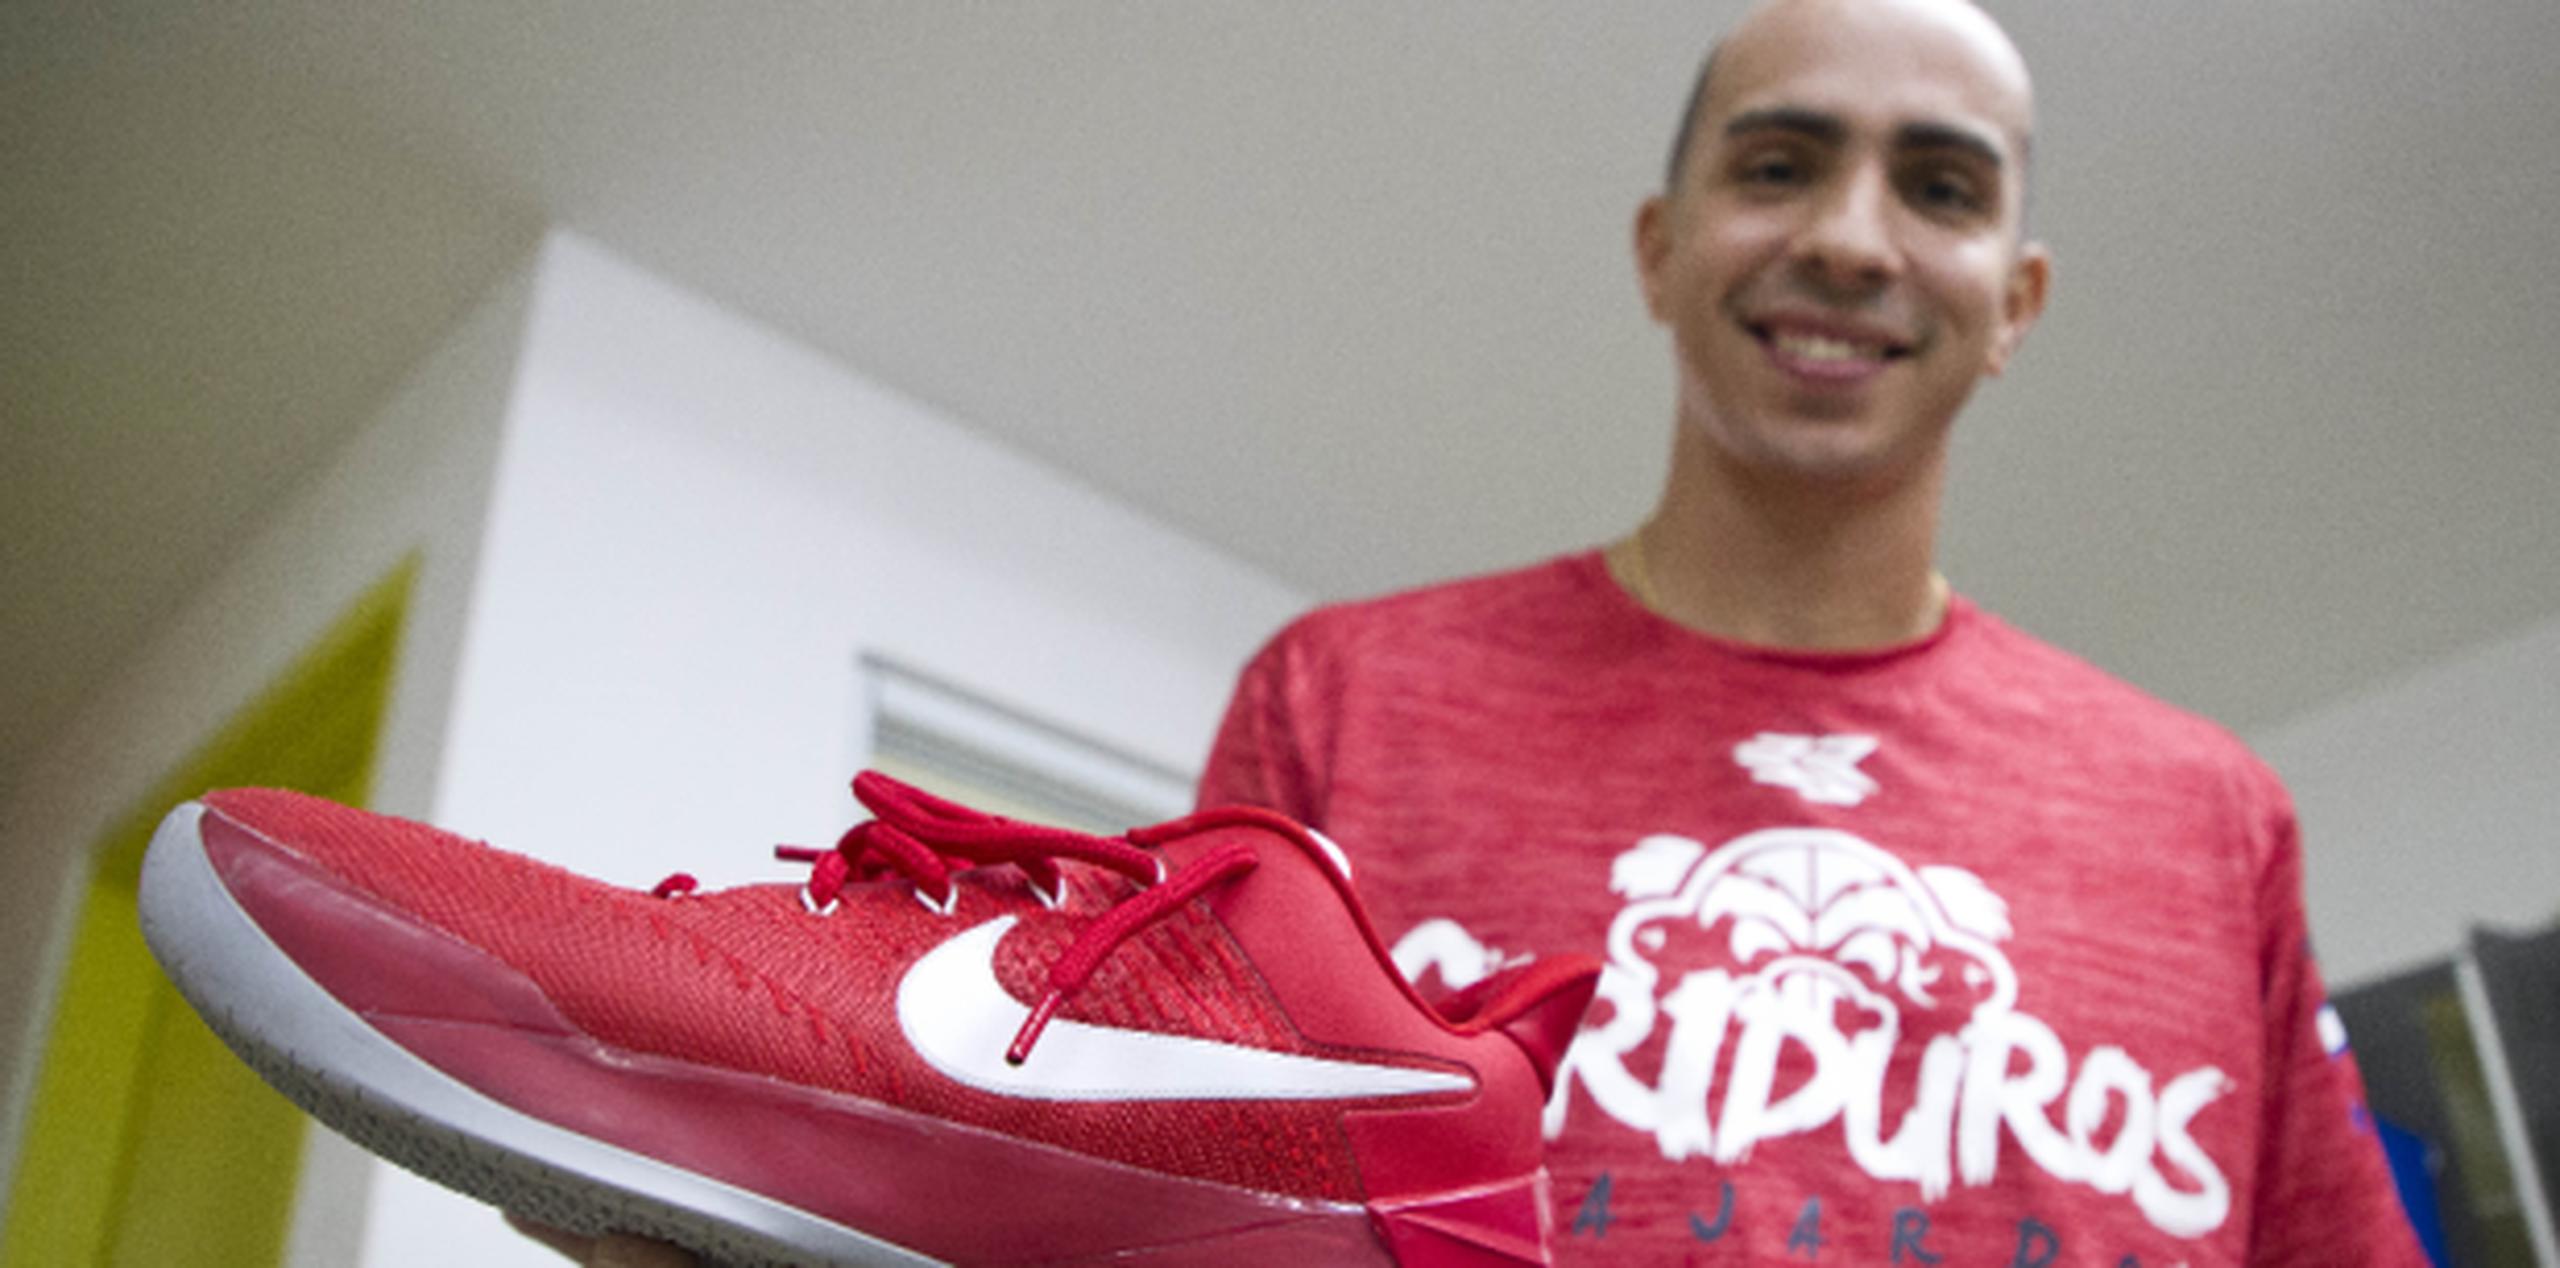 Carlos Arroyo muestran su más reciente modelo para juego: los ‘Kobe’ de la Nike. (jorge.ramirez@gfrmedia.com)